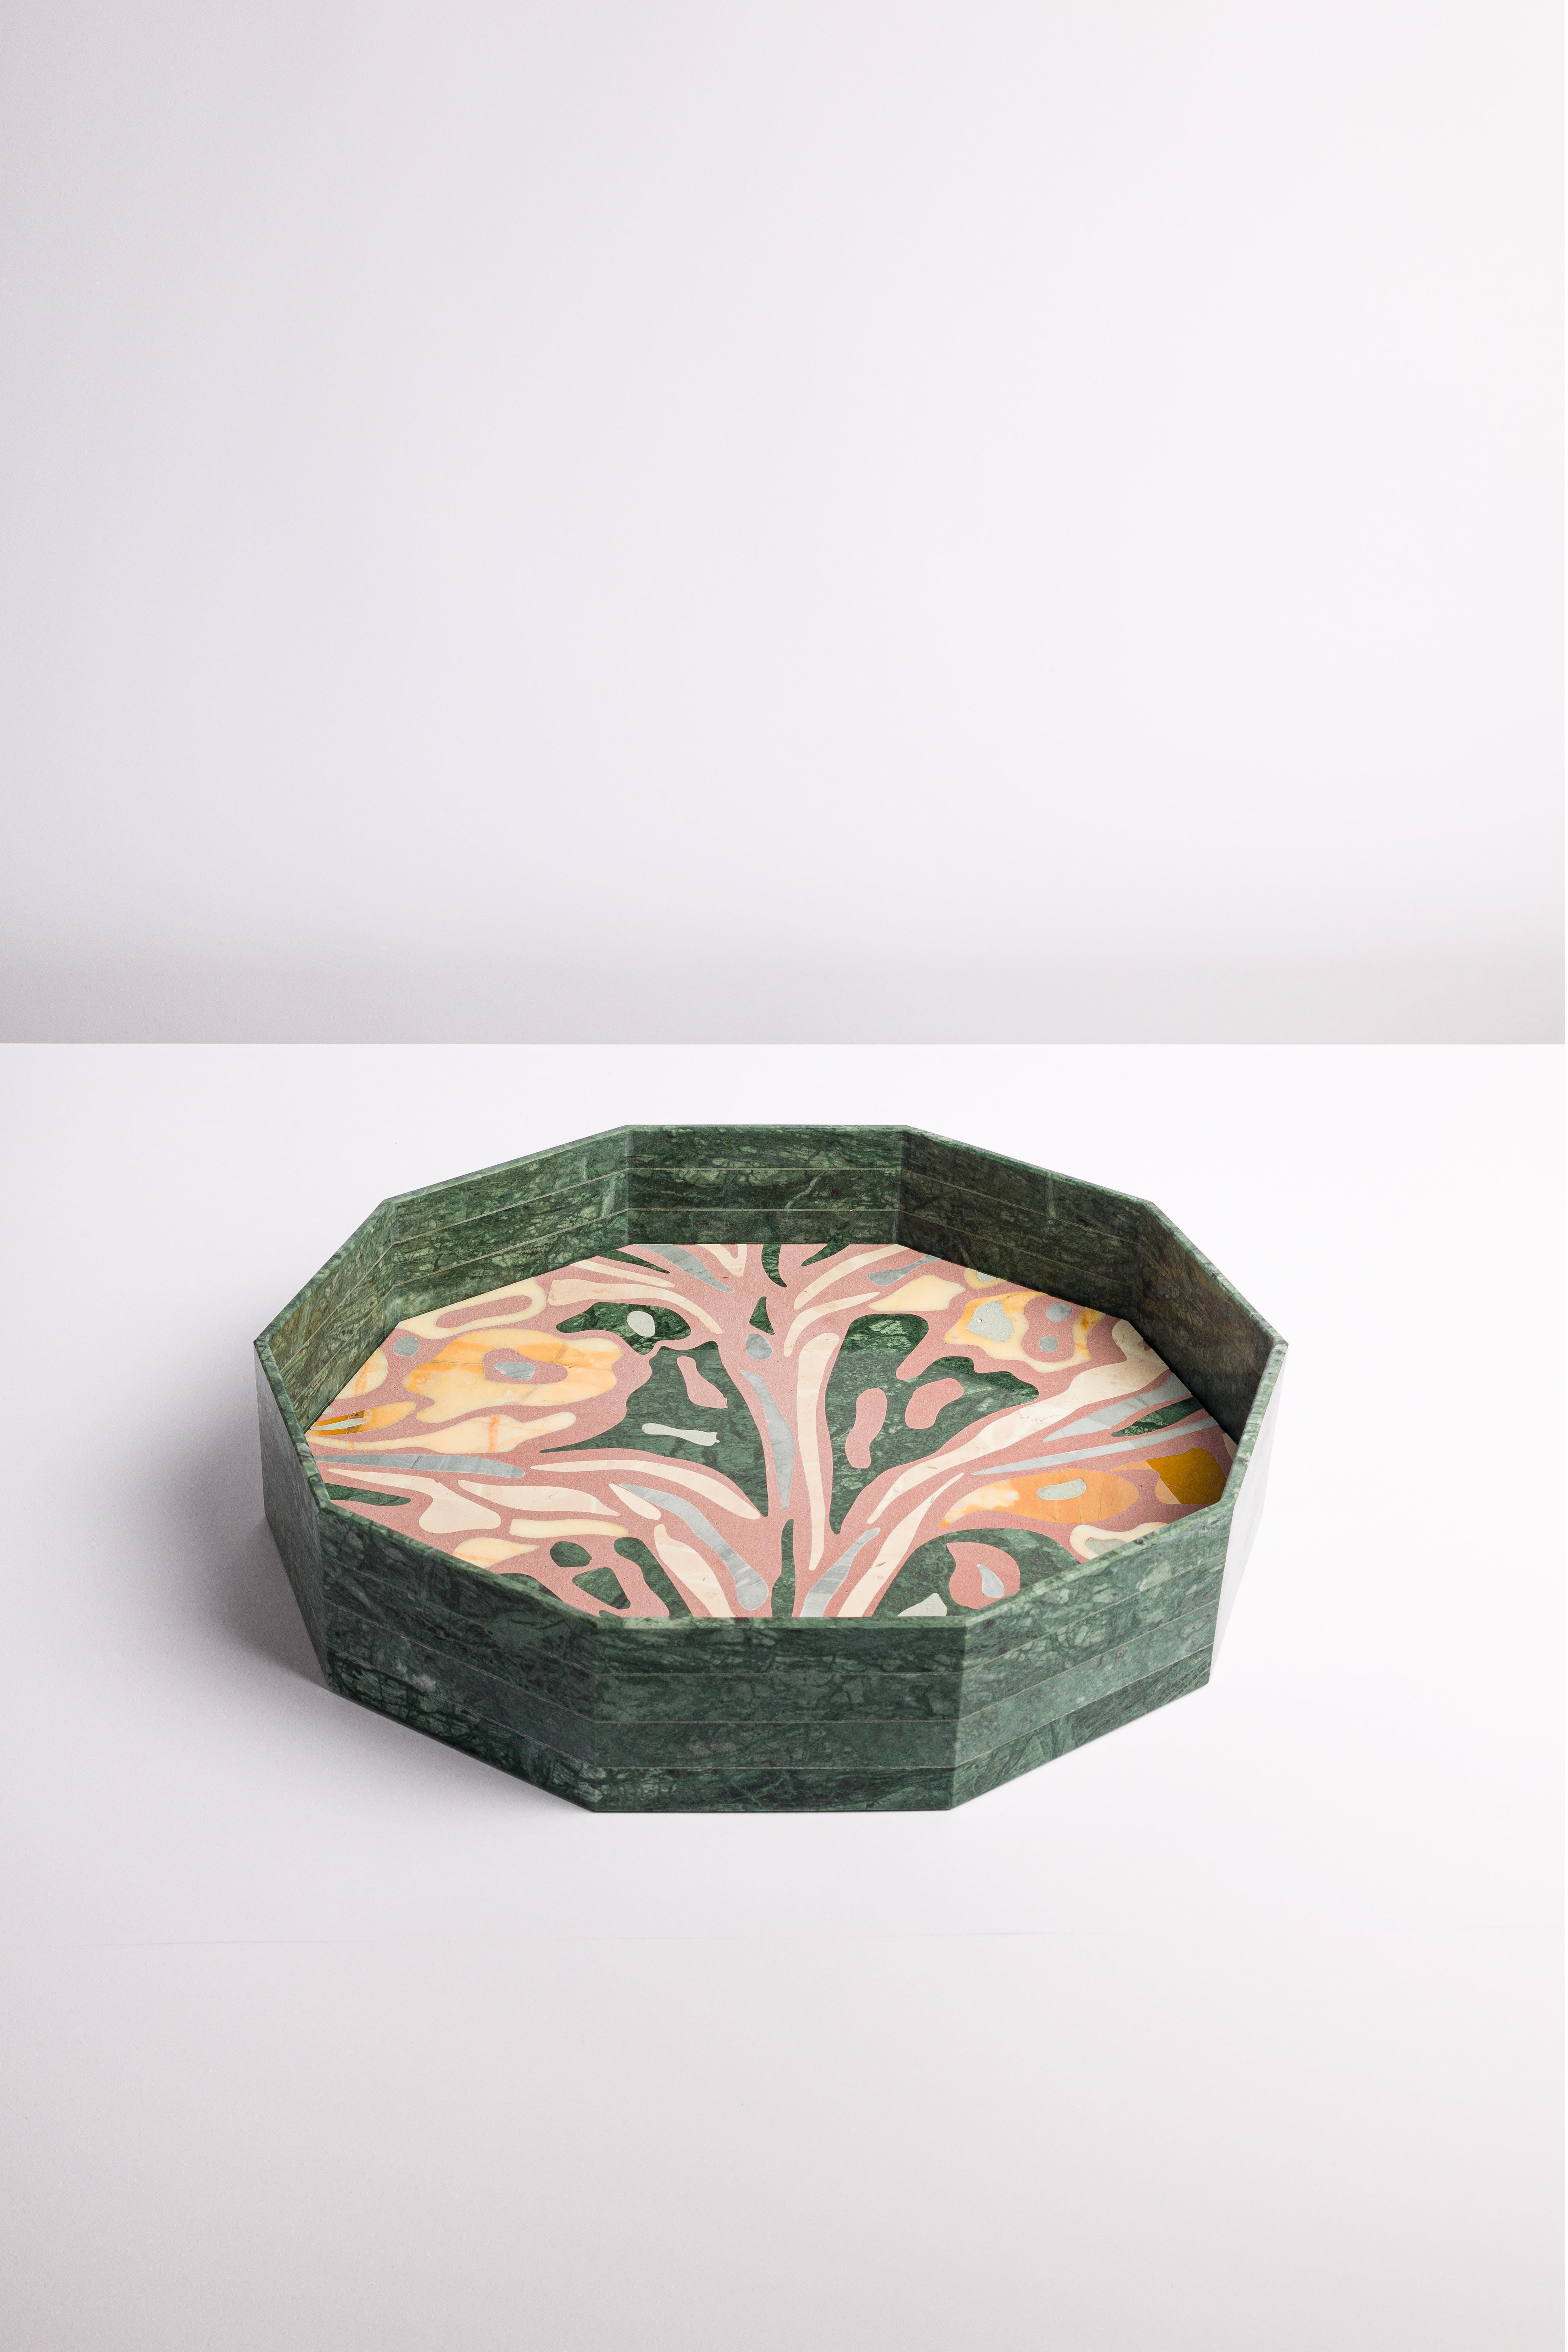 Moderno Zanellato/Bortotto vassoio / Vaso in marmo Verde Guatemala  In New Condition For Sale In Pordenone, PN